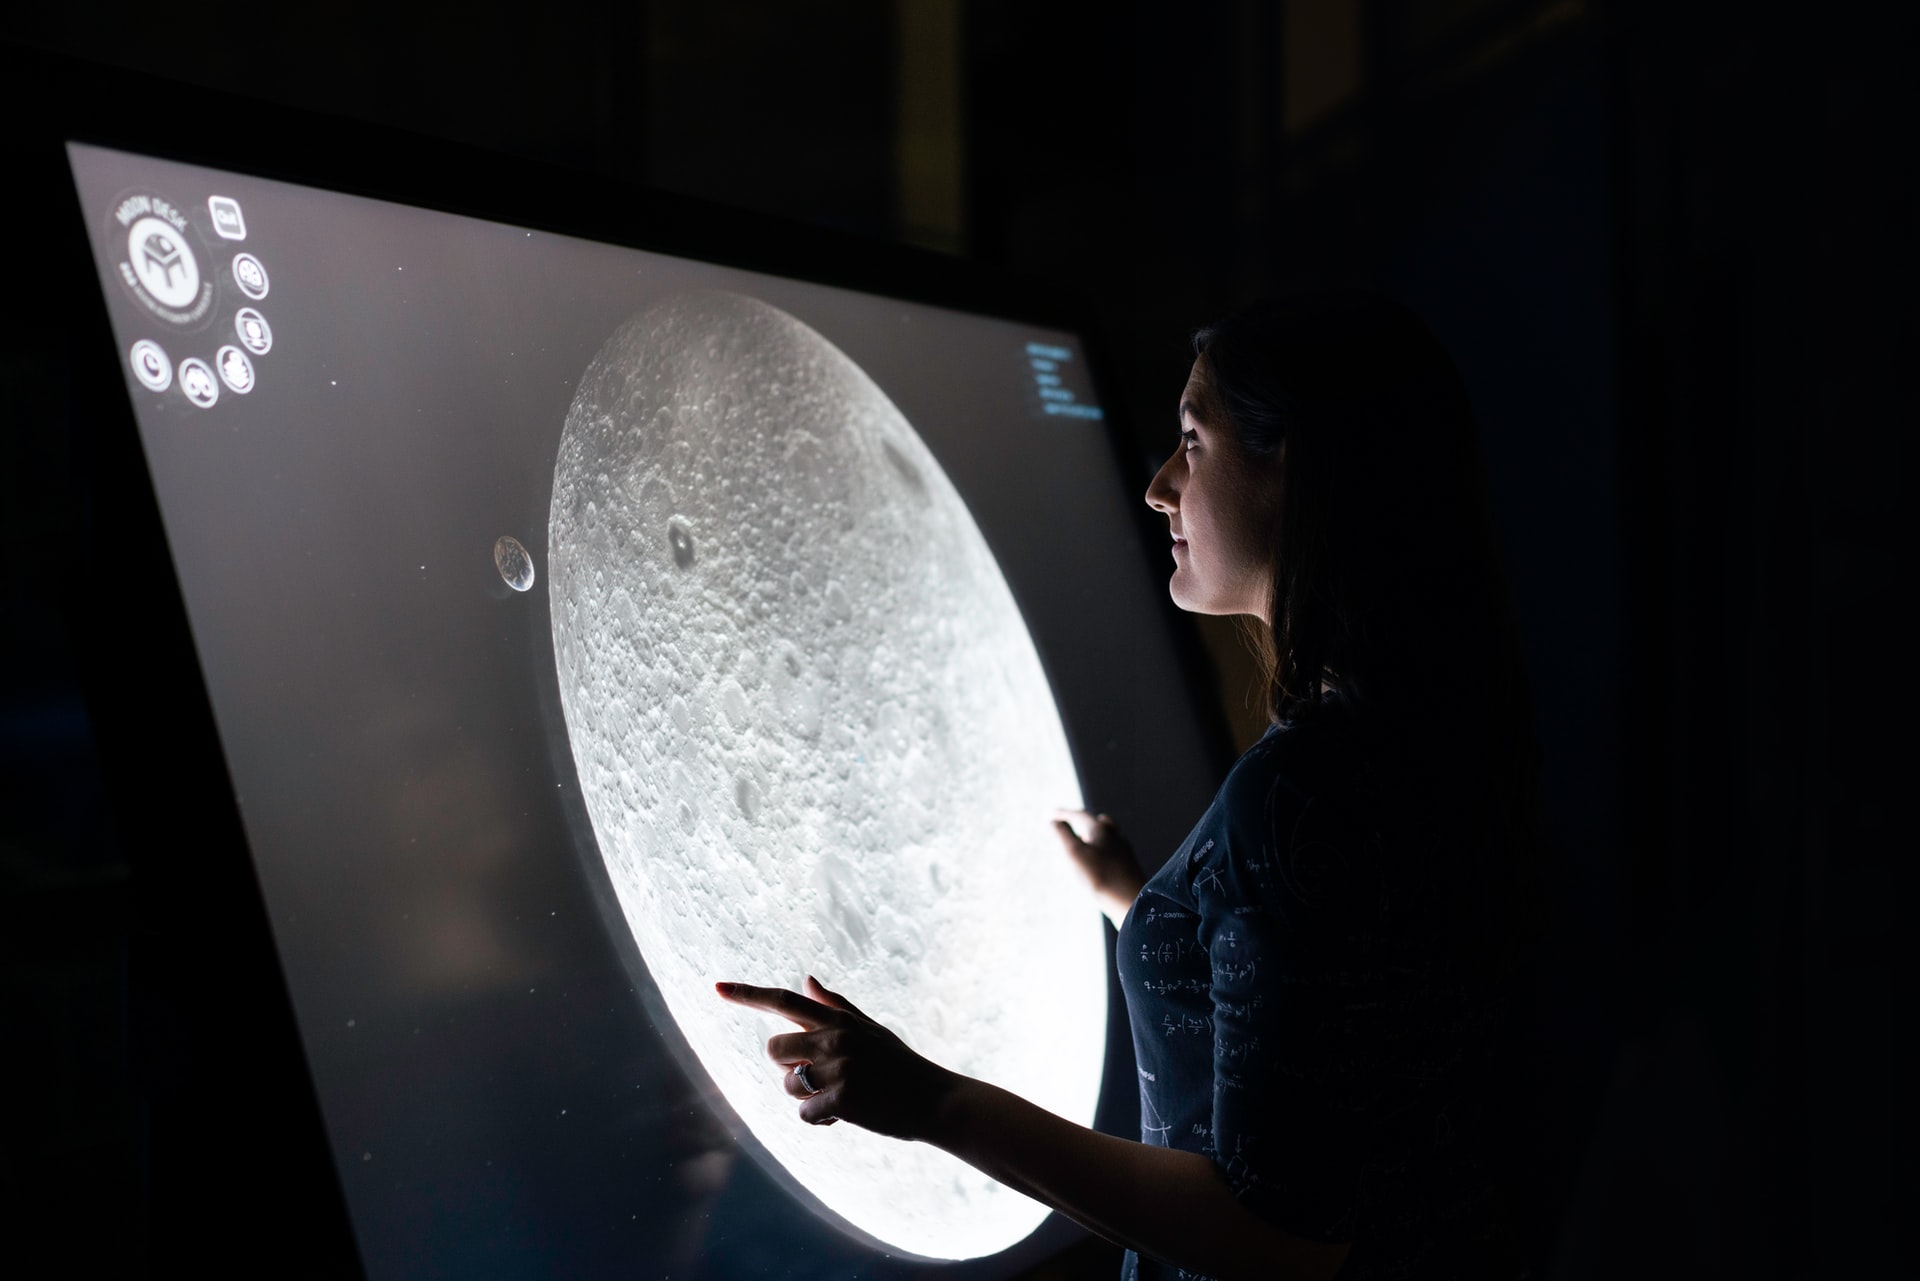 Kobieta stoi przy interaktywnej tablicy, na której wyświetlany jest księżyc.